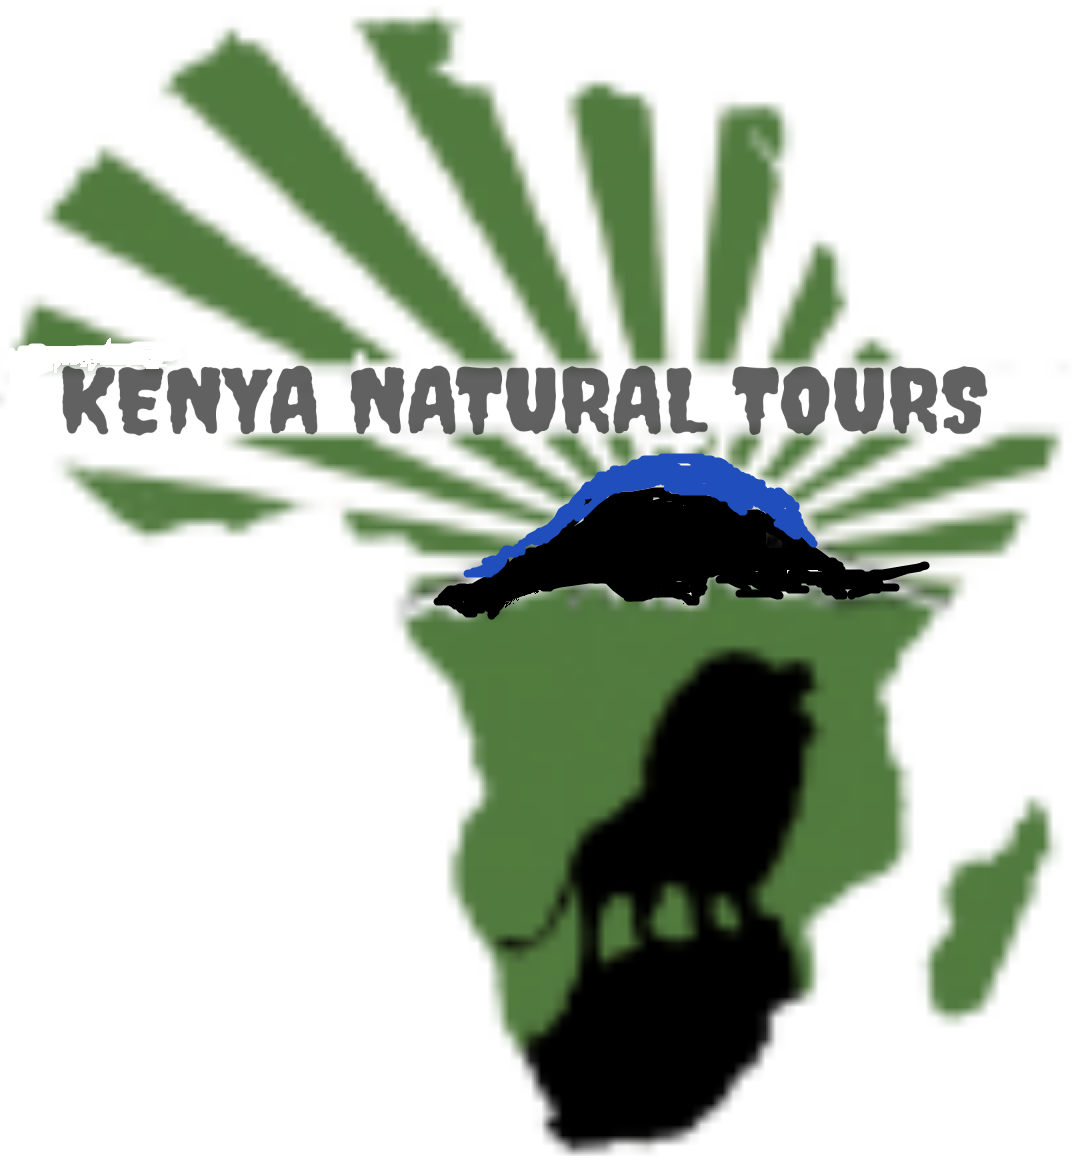 6 days Kenya Maasai mara group joining judget tours packages cost-Kenya Natural Tours,masai mara itinerary operators